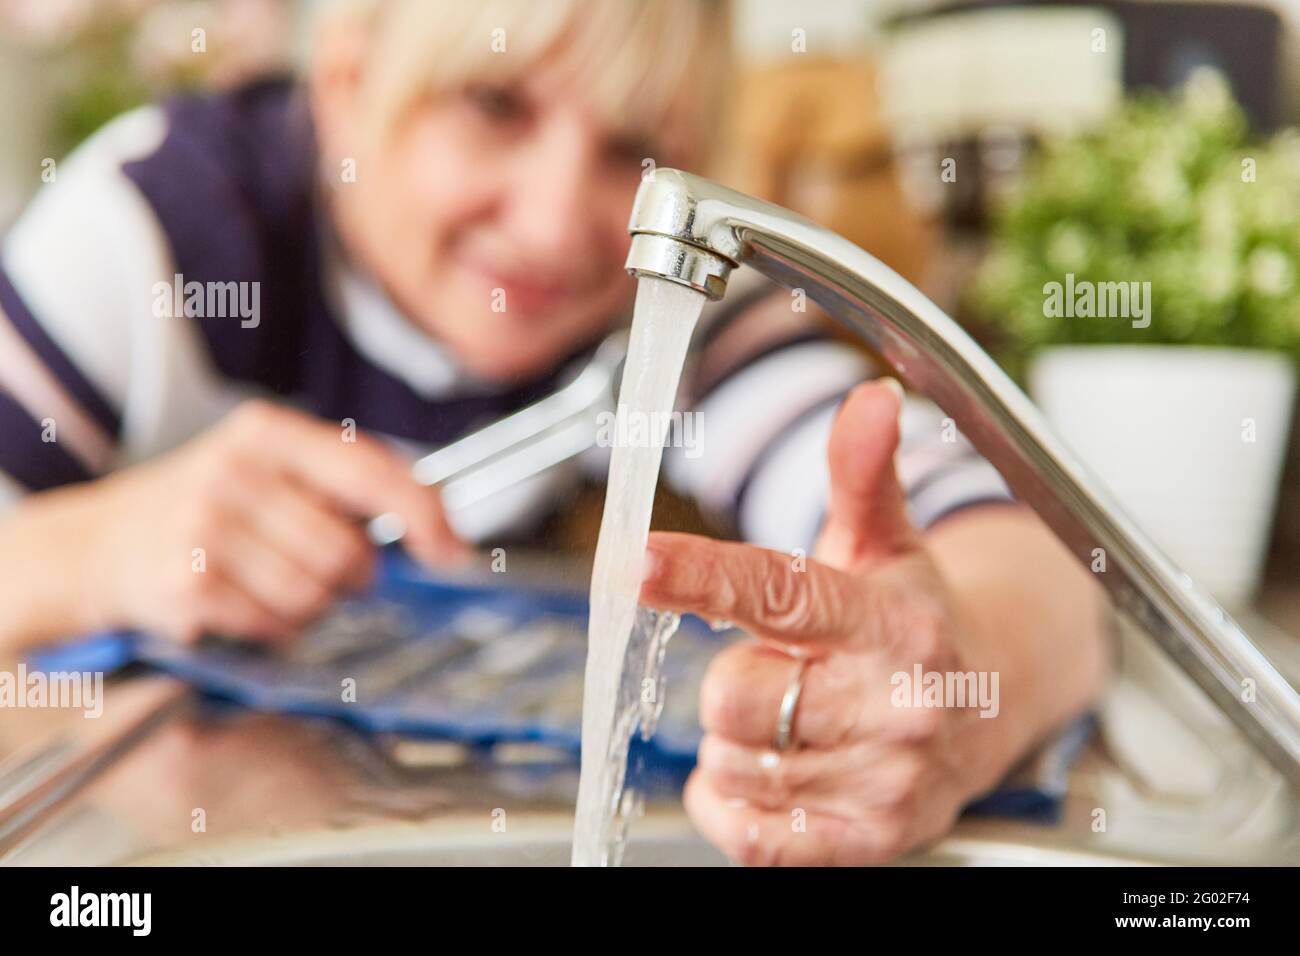 Die Frau, die als Handwerker arbeitet, überprüft die Temperatur des Heißes Wasser am Wasserhahn des Waschbeckens Stockfoto